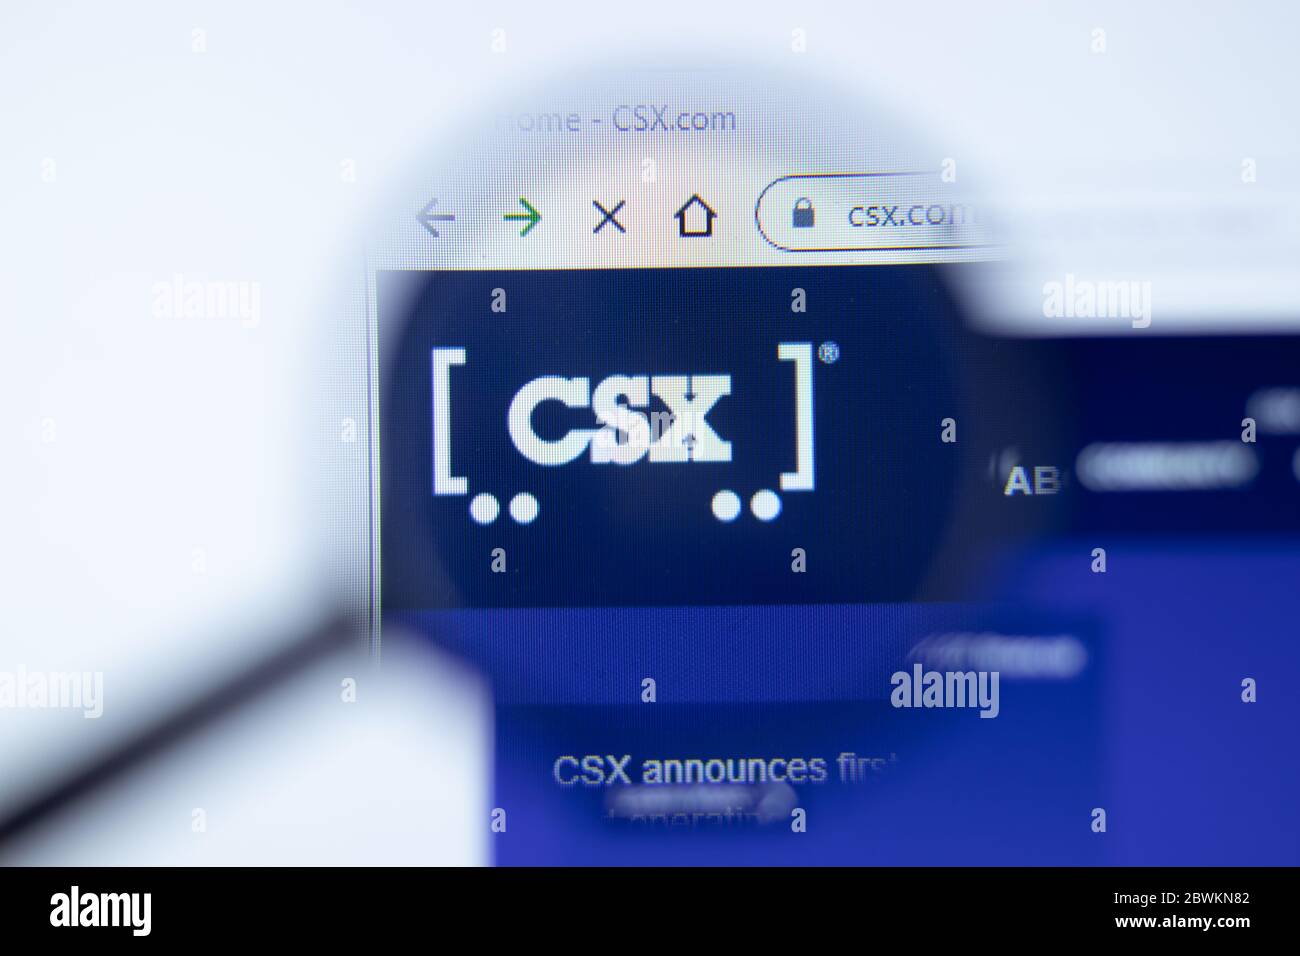 Moscou, Russie - 1 juin 2020 : page du site CSX.com. Logo CSX Corp sur l'écran, Editorial. Banque D'Images